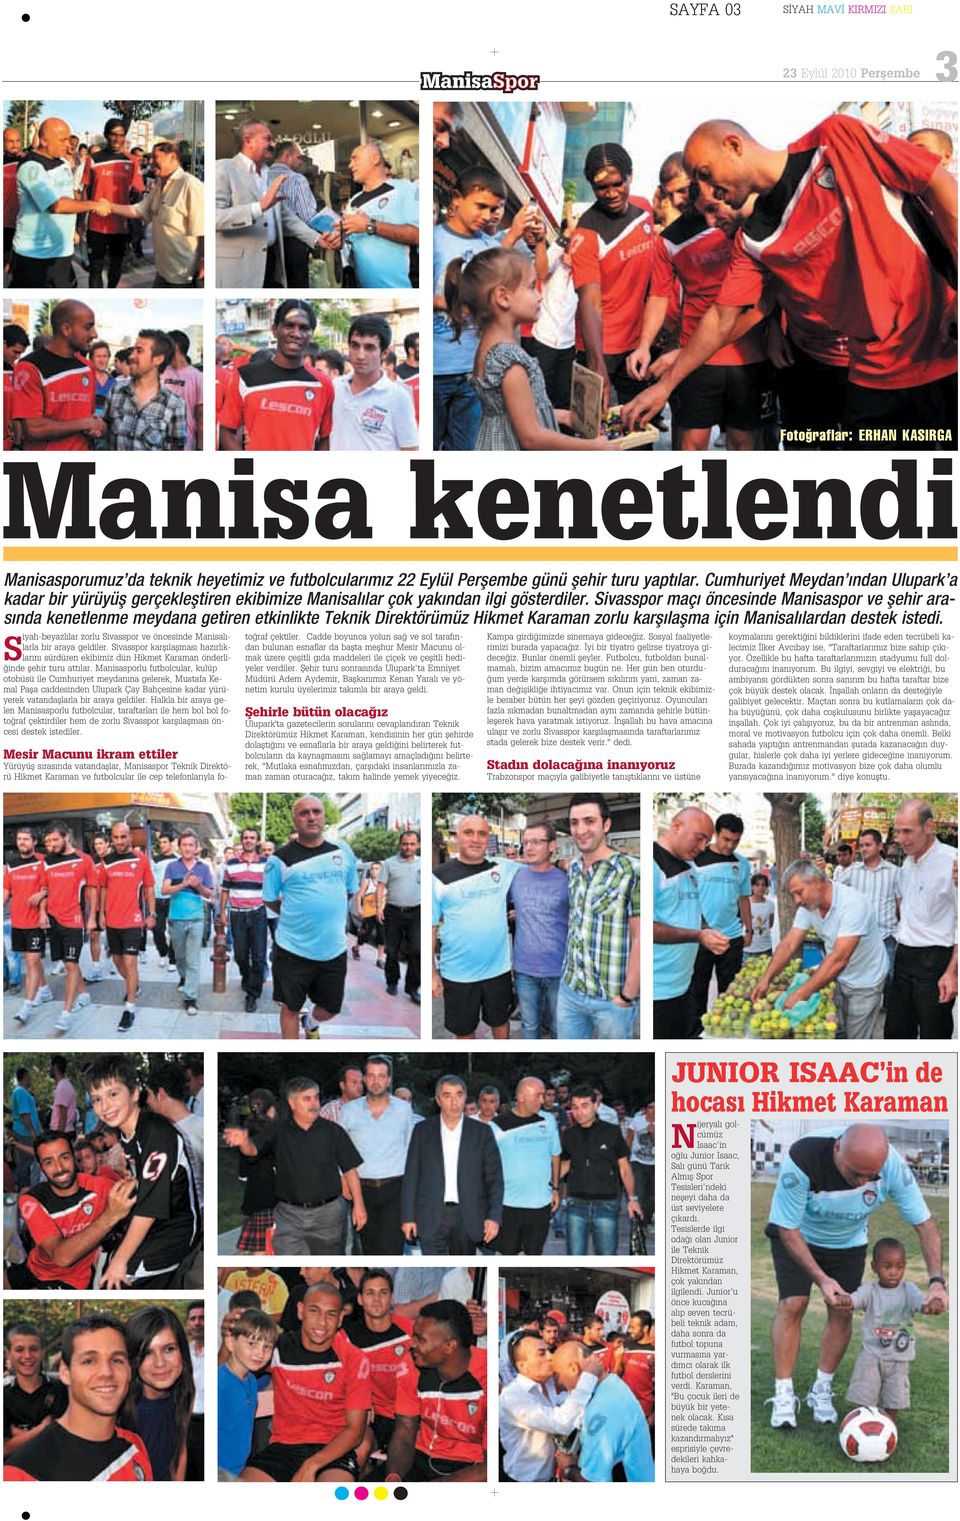 Sivasspor maç öncesinde Manisaspor ve flehir aras nda kenetlenme meydana getiren etkinlikte Teknik Direktörümüz Hikmet Karaman zorlu karfl laflma için Manisal lardan destek istedi.